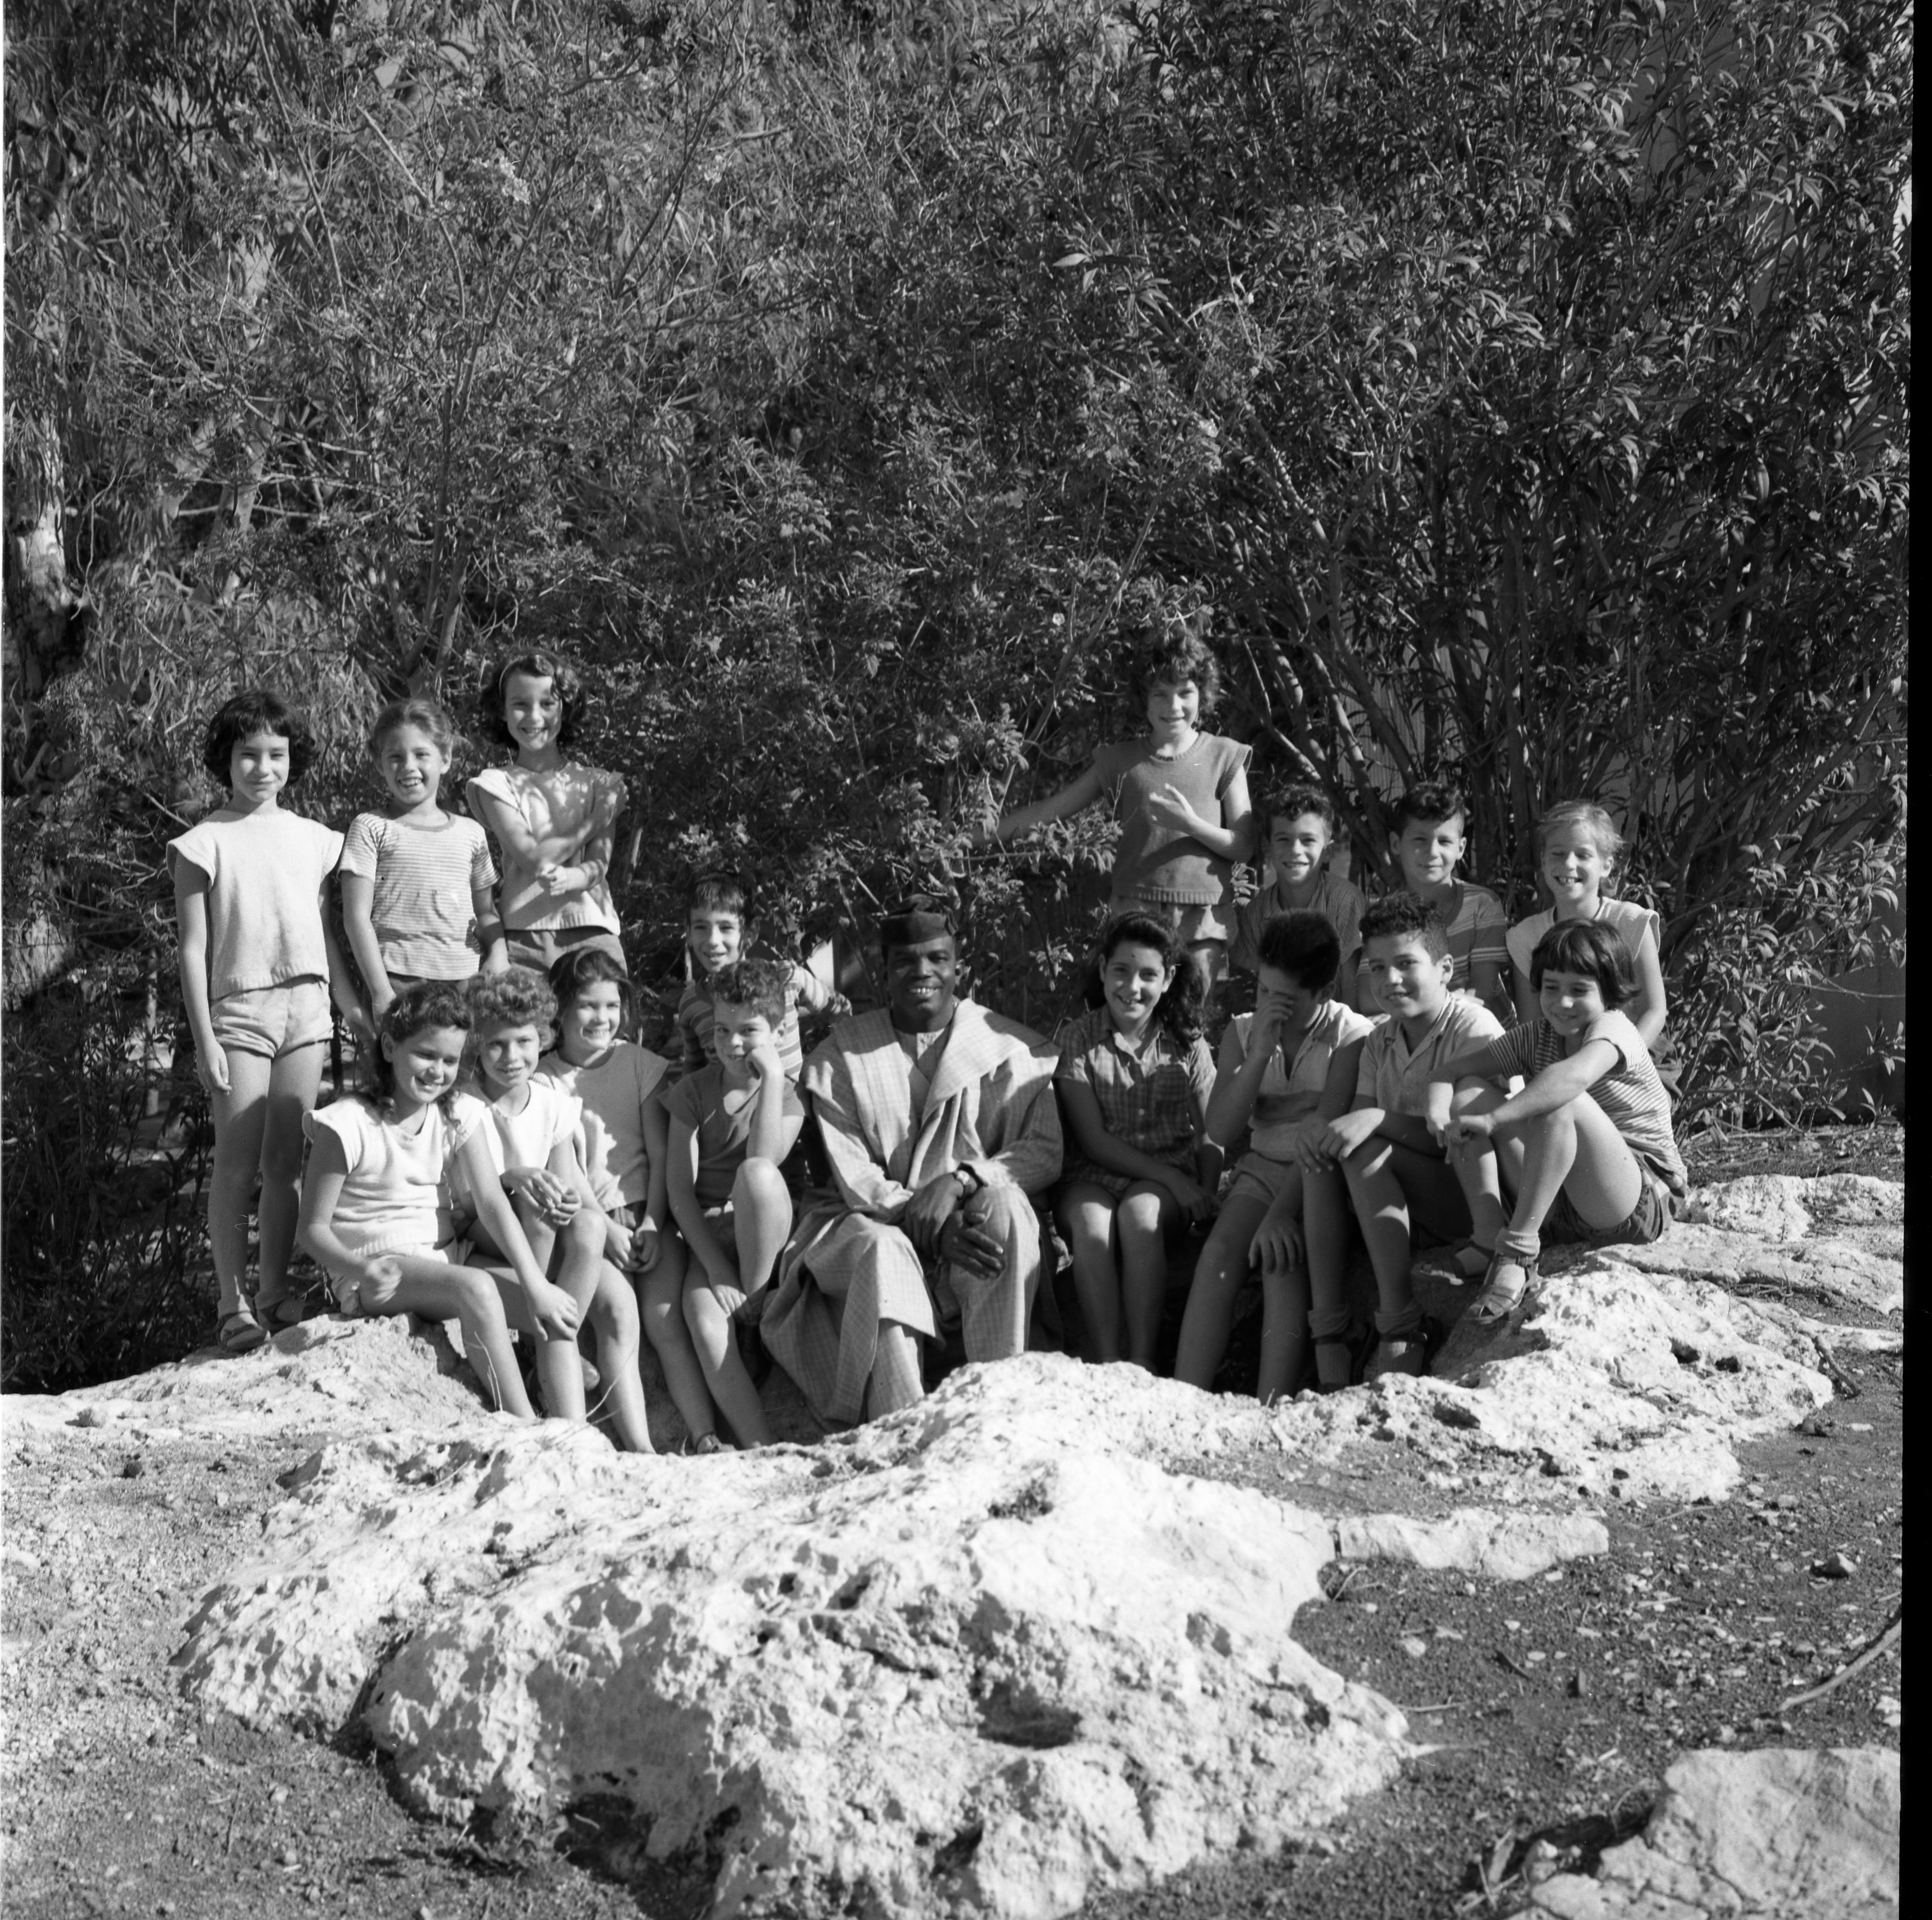  רוברטס מגינאה עם קבוצ שיבולת; 1960